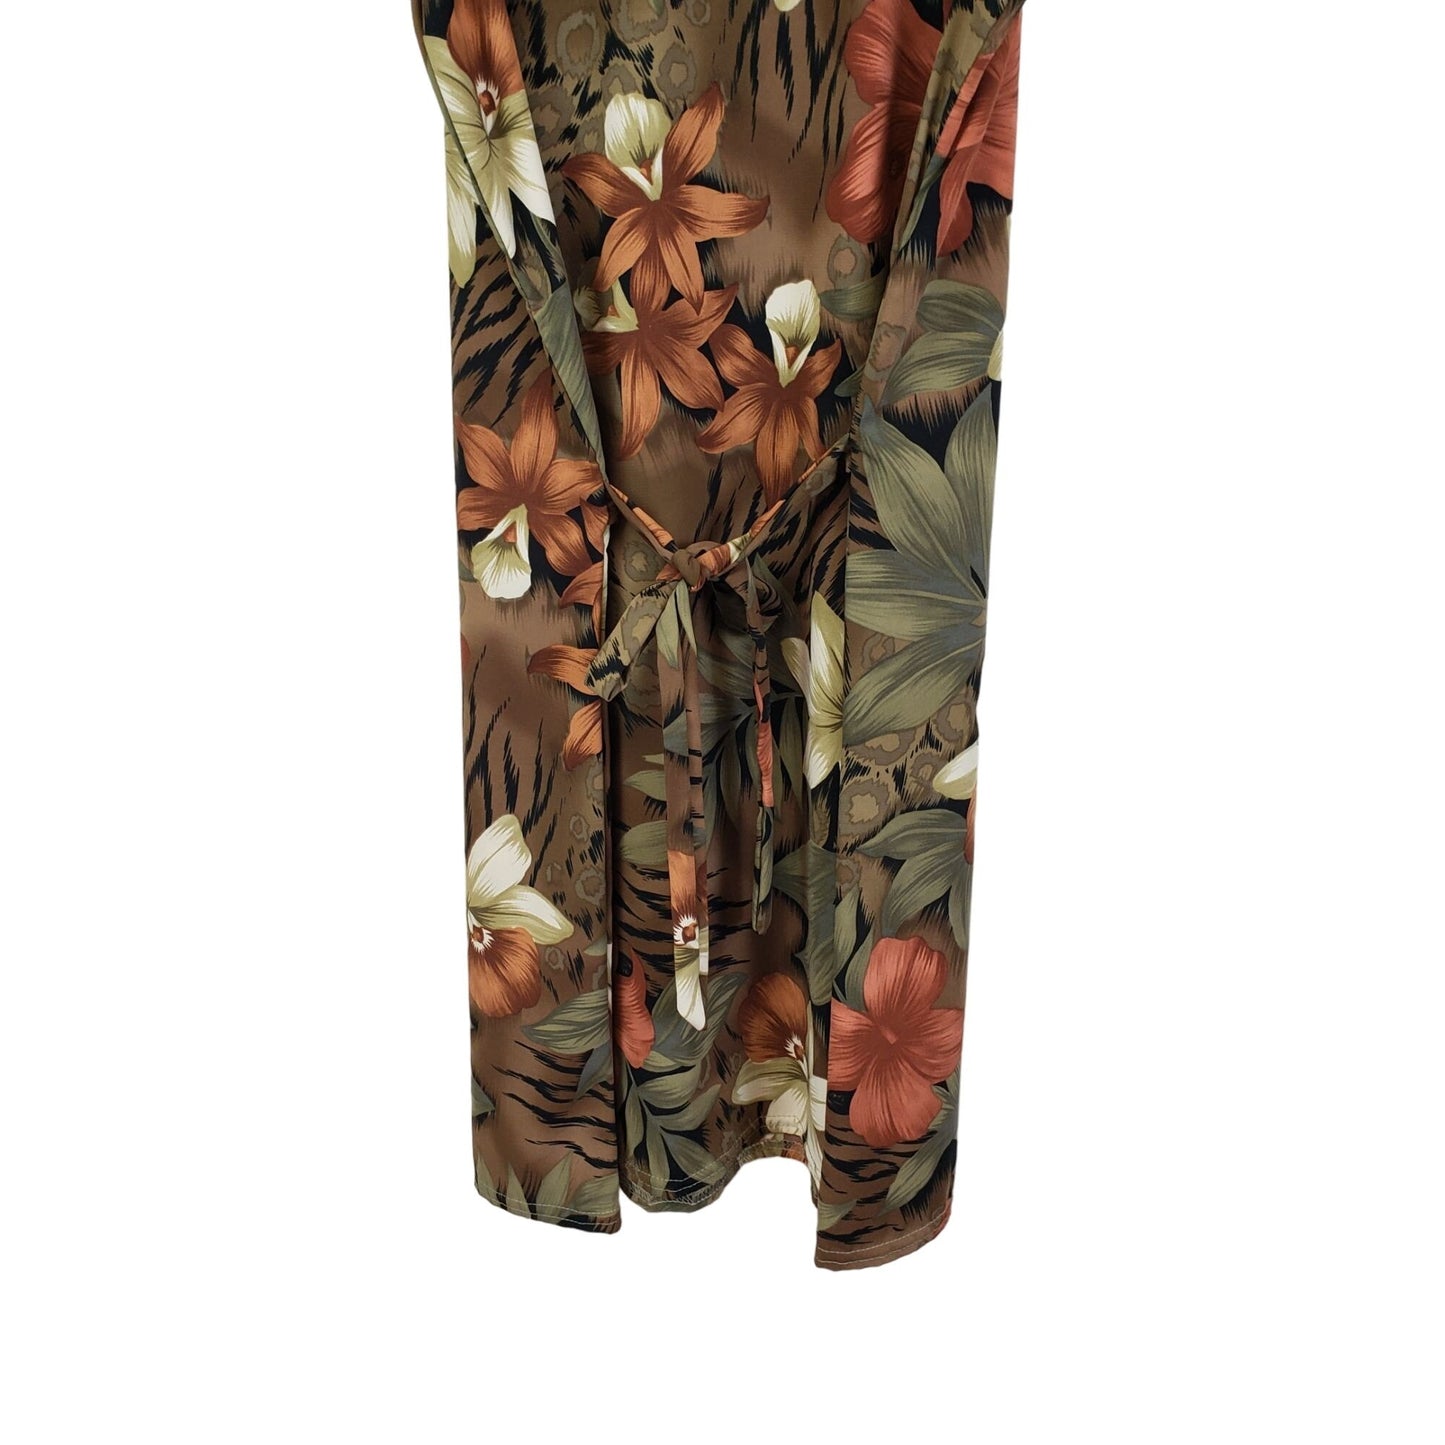 Tampa Bay Artwear Tropical Print Mini Dress Size M/L (est)